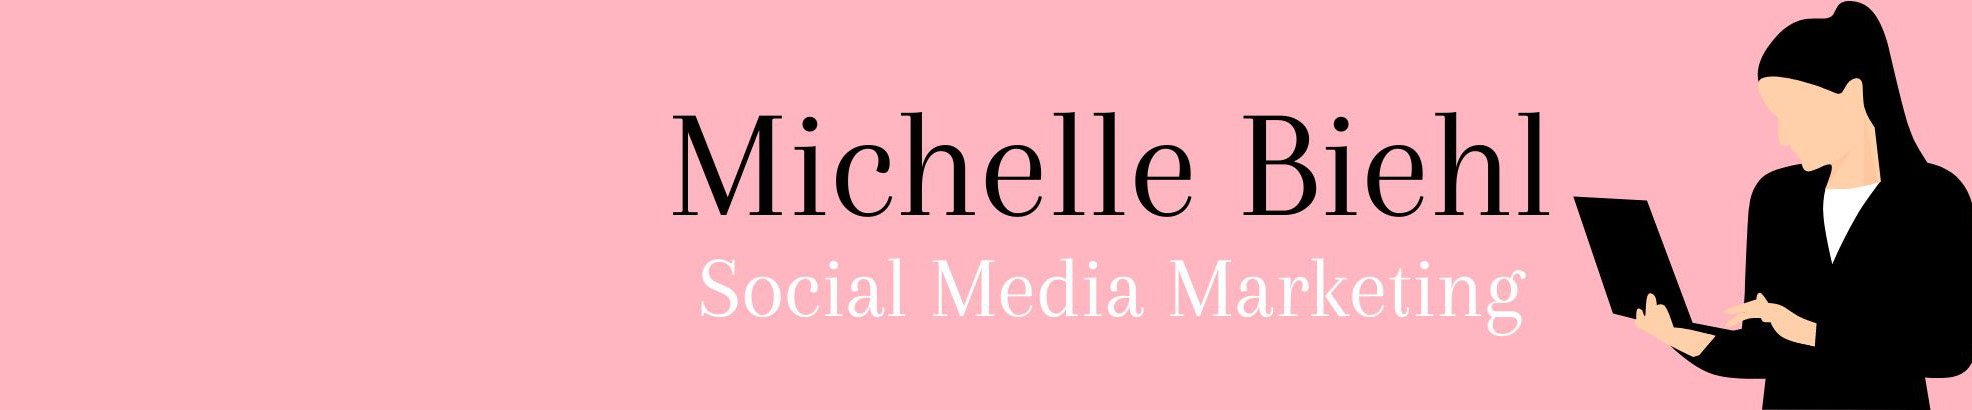 Banner profilu uživatele Biehl Michelle